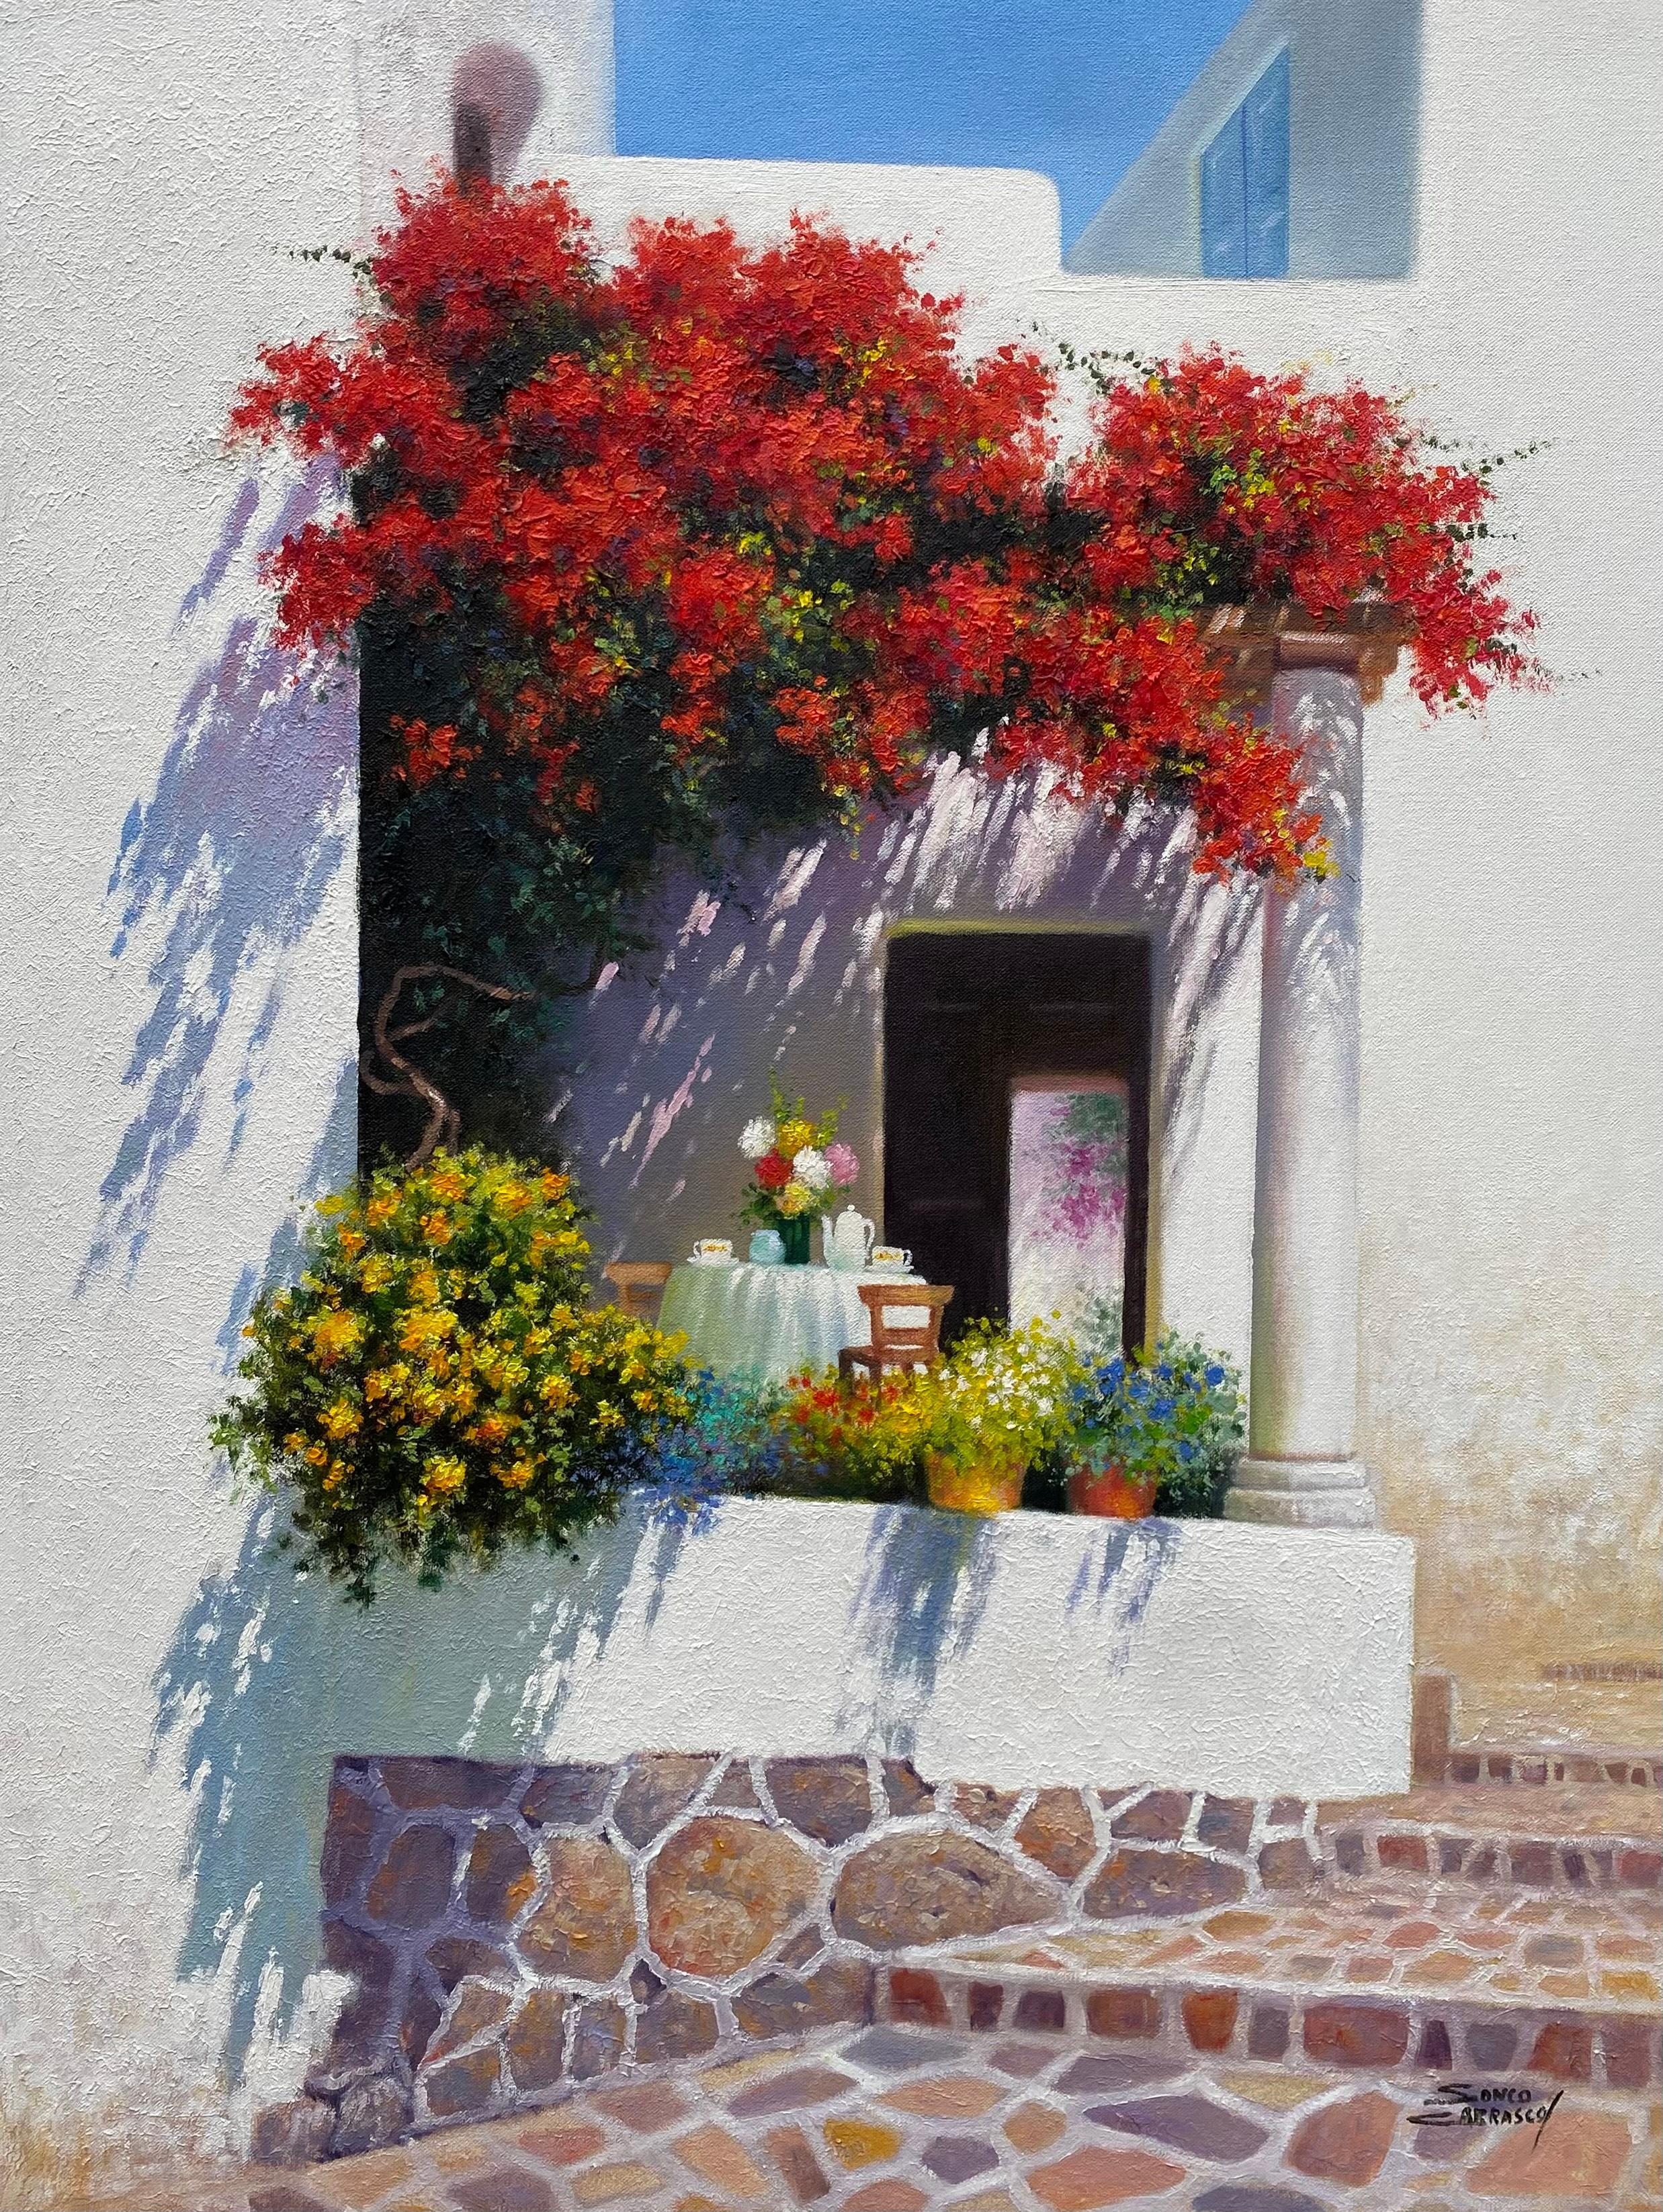 Sonco Carrasco Landscape Painting - Sunlit Haven-original floral impressionism cityscape painting-contemporary Art